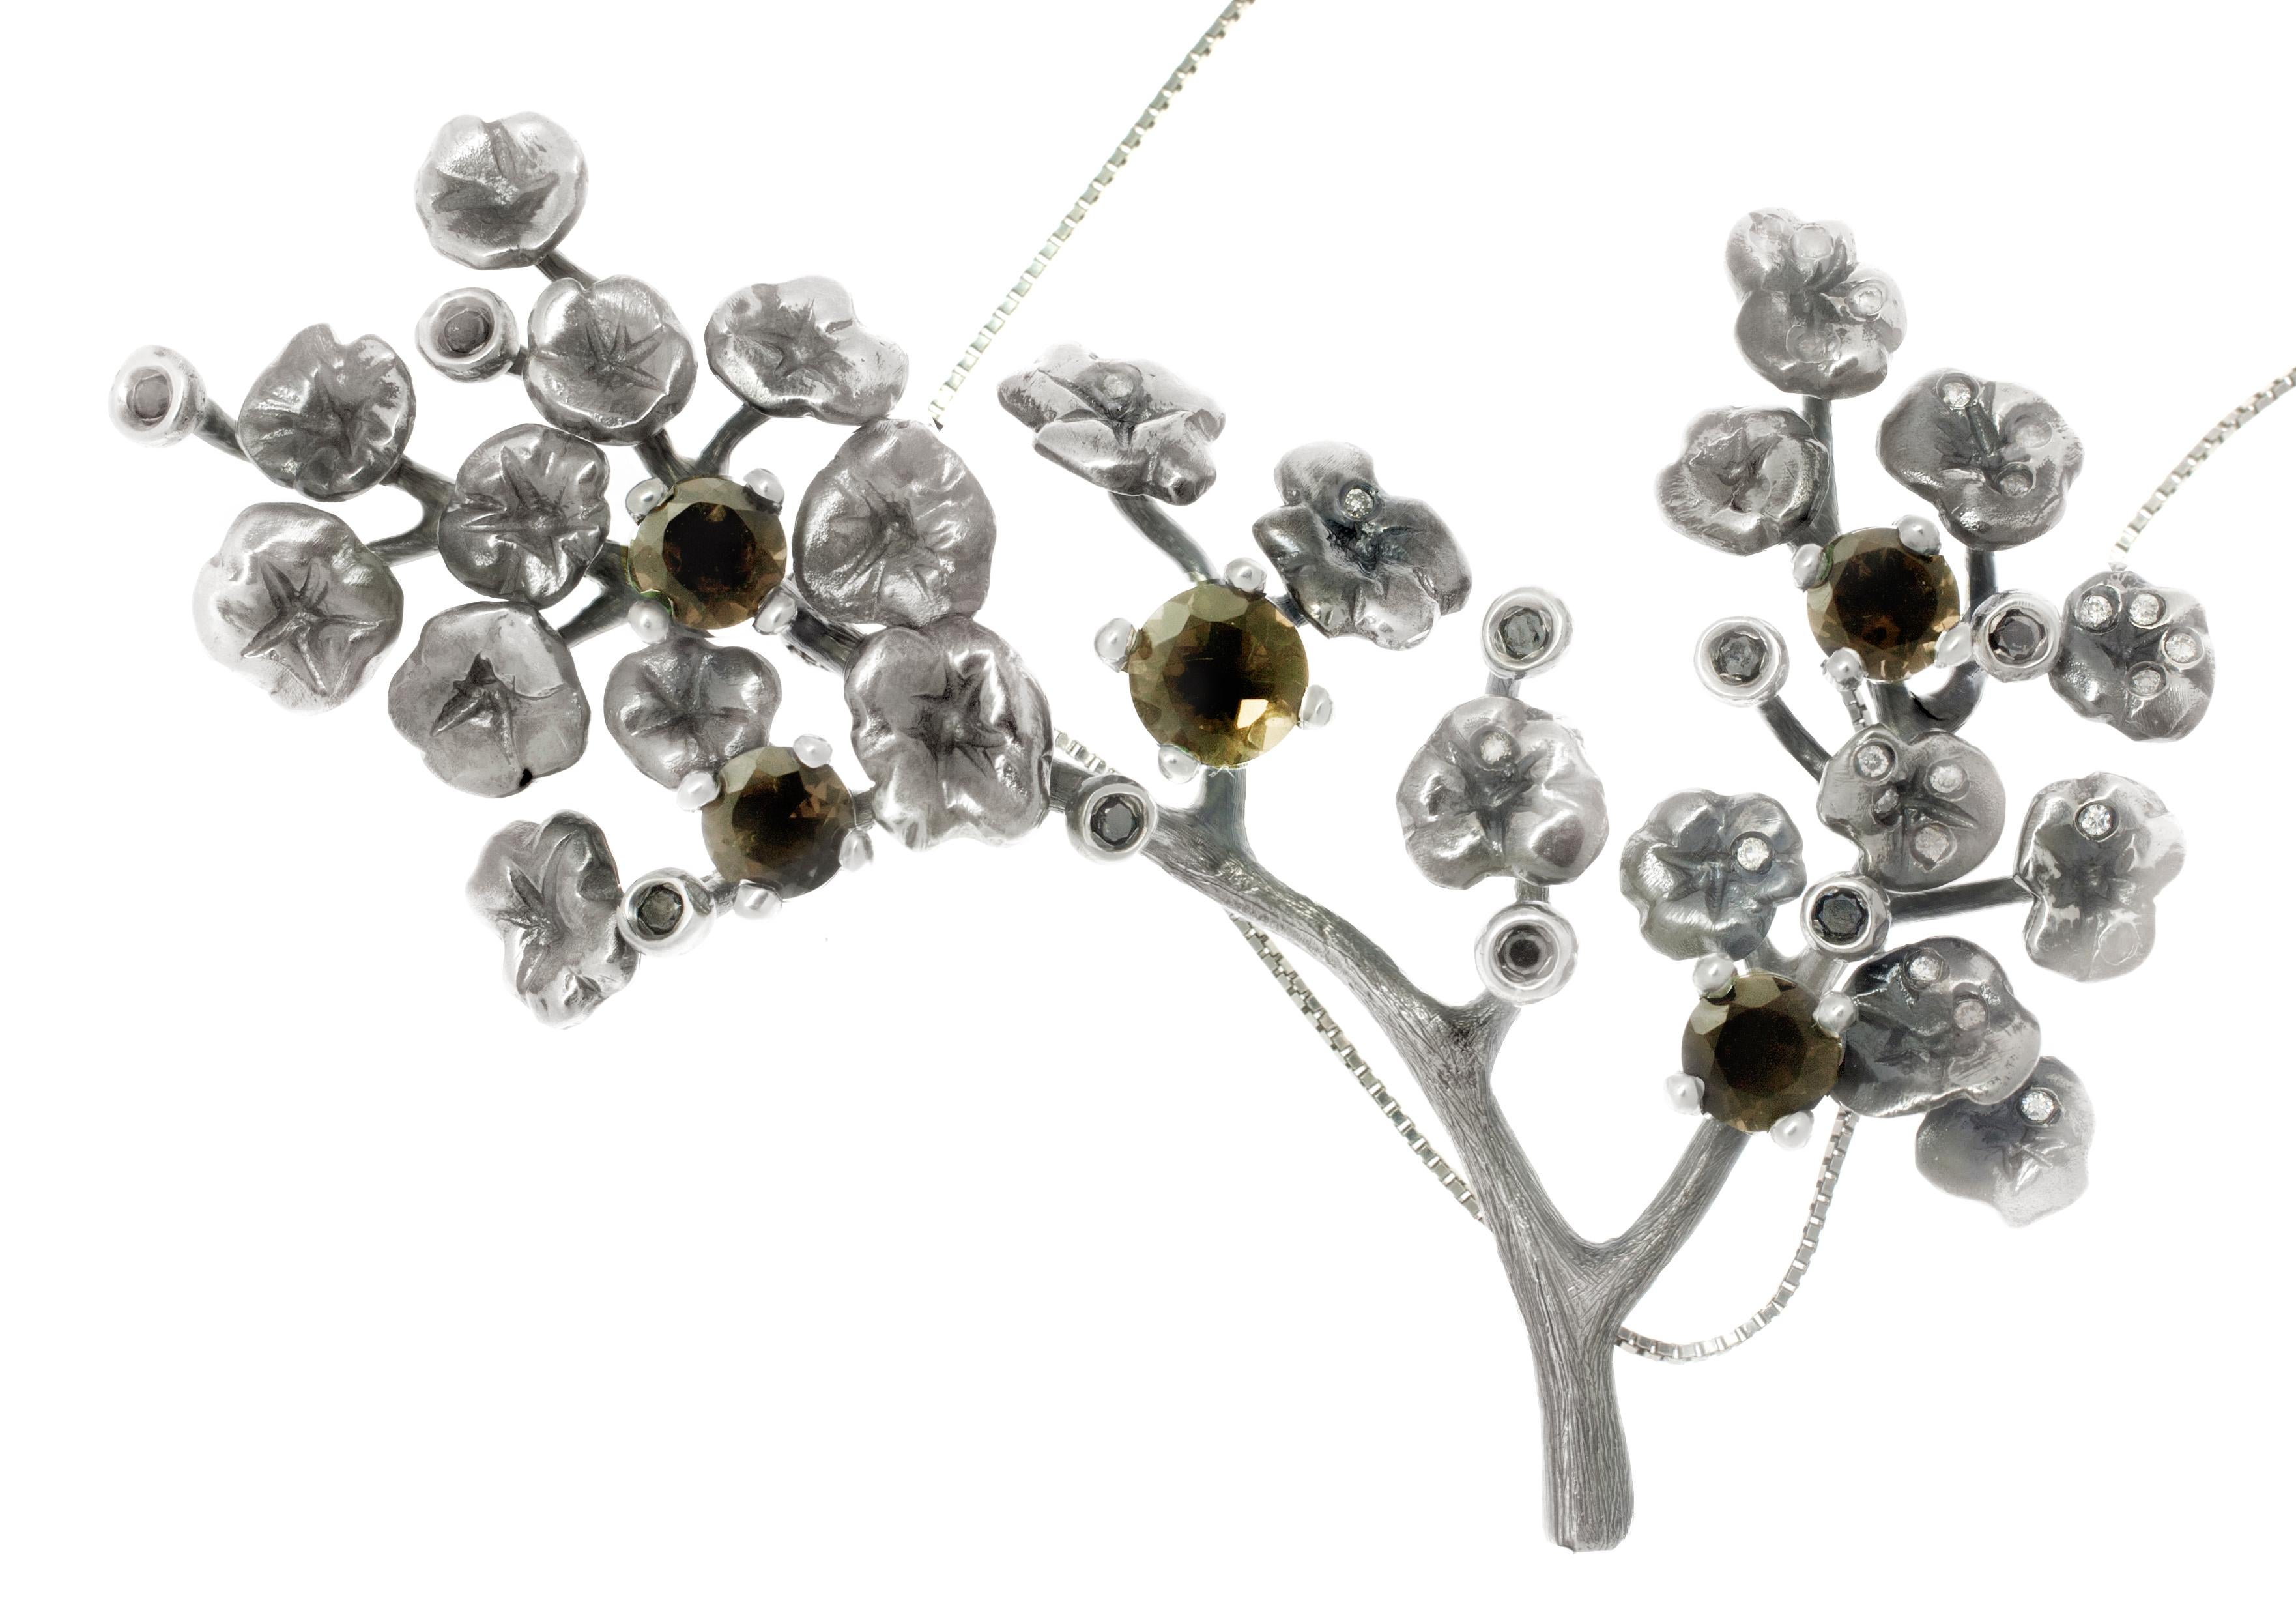 Dieses wunderschöne zeitgenössische Heliotrop-Halsband der Künstlerin ist mit 34 weißen und schwarzen Diamanten und 5 Rauchquarzen besetzt. Das aus dunklem Silber gefertigte Stück strahlt einen designorientierten New-Gothic-Look aus, der einzigartig